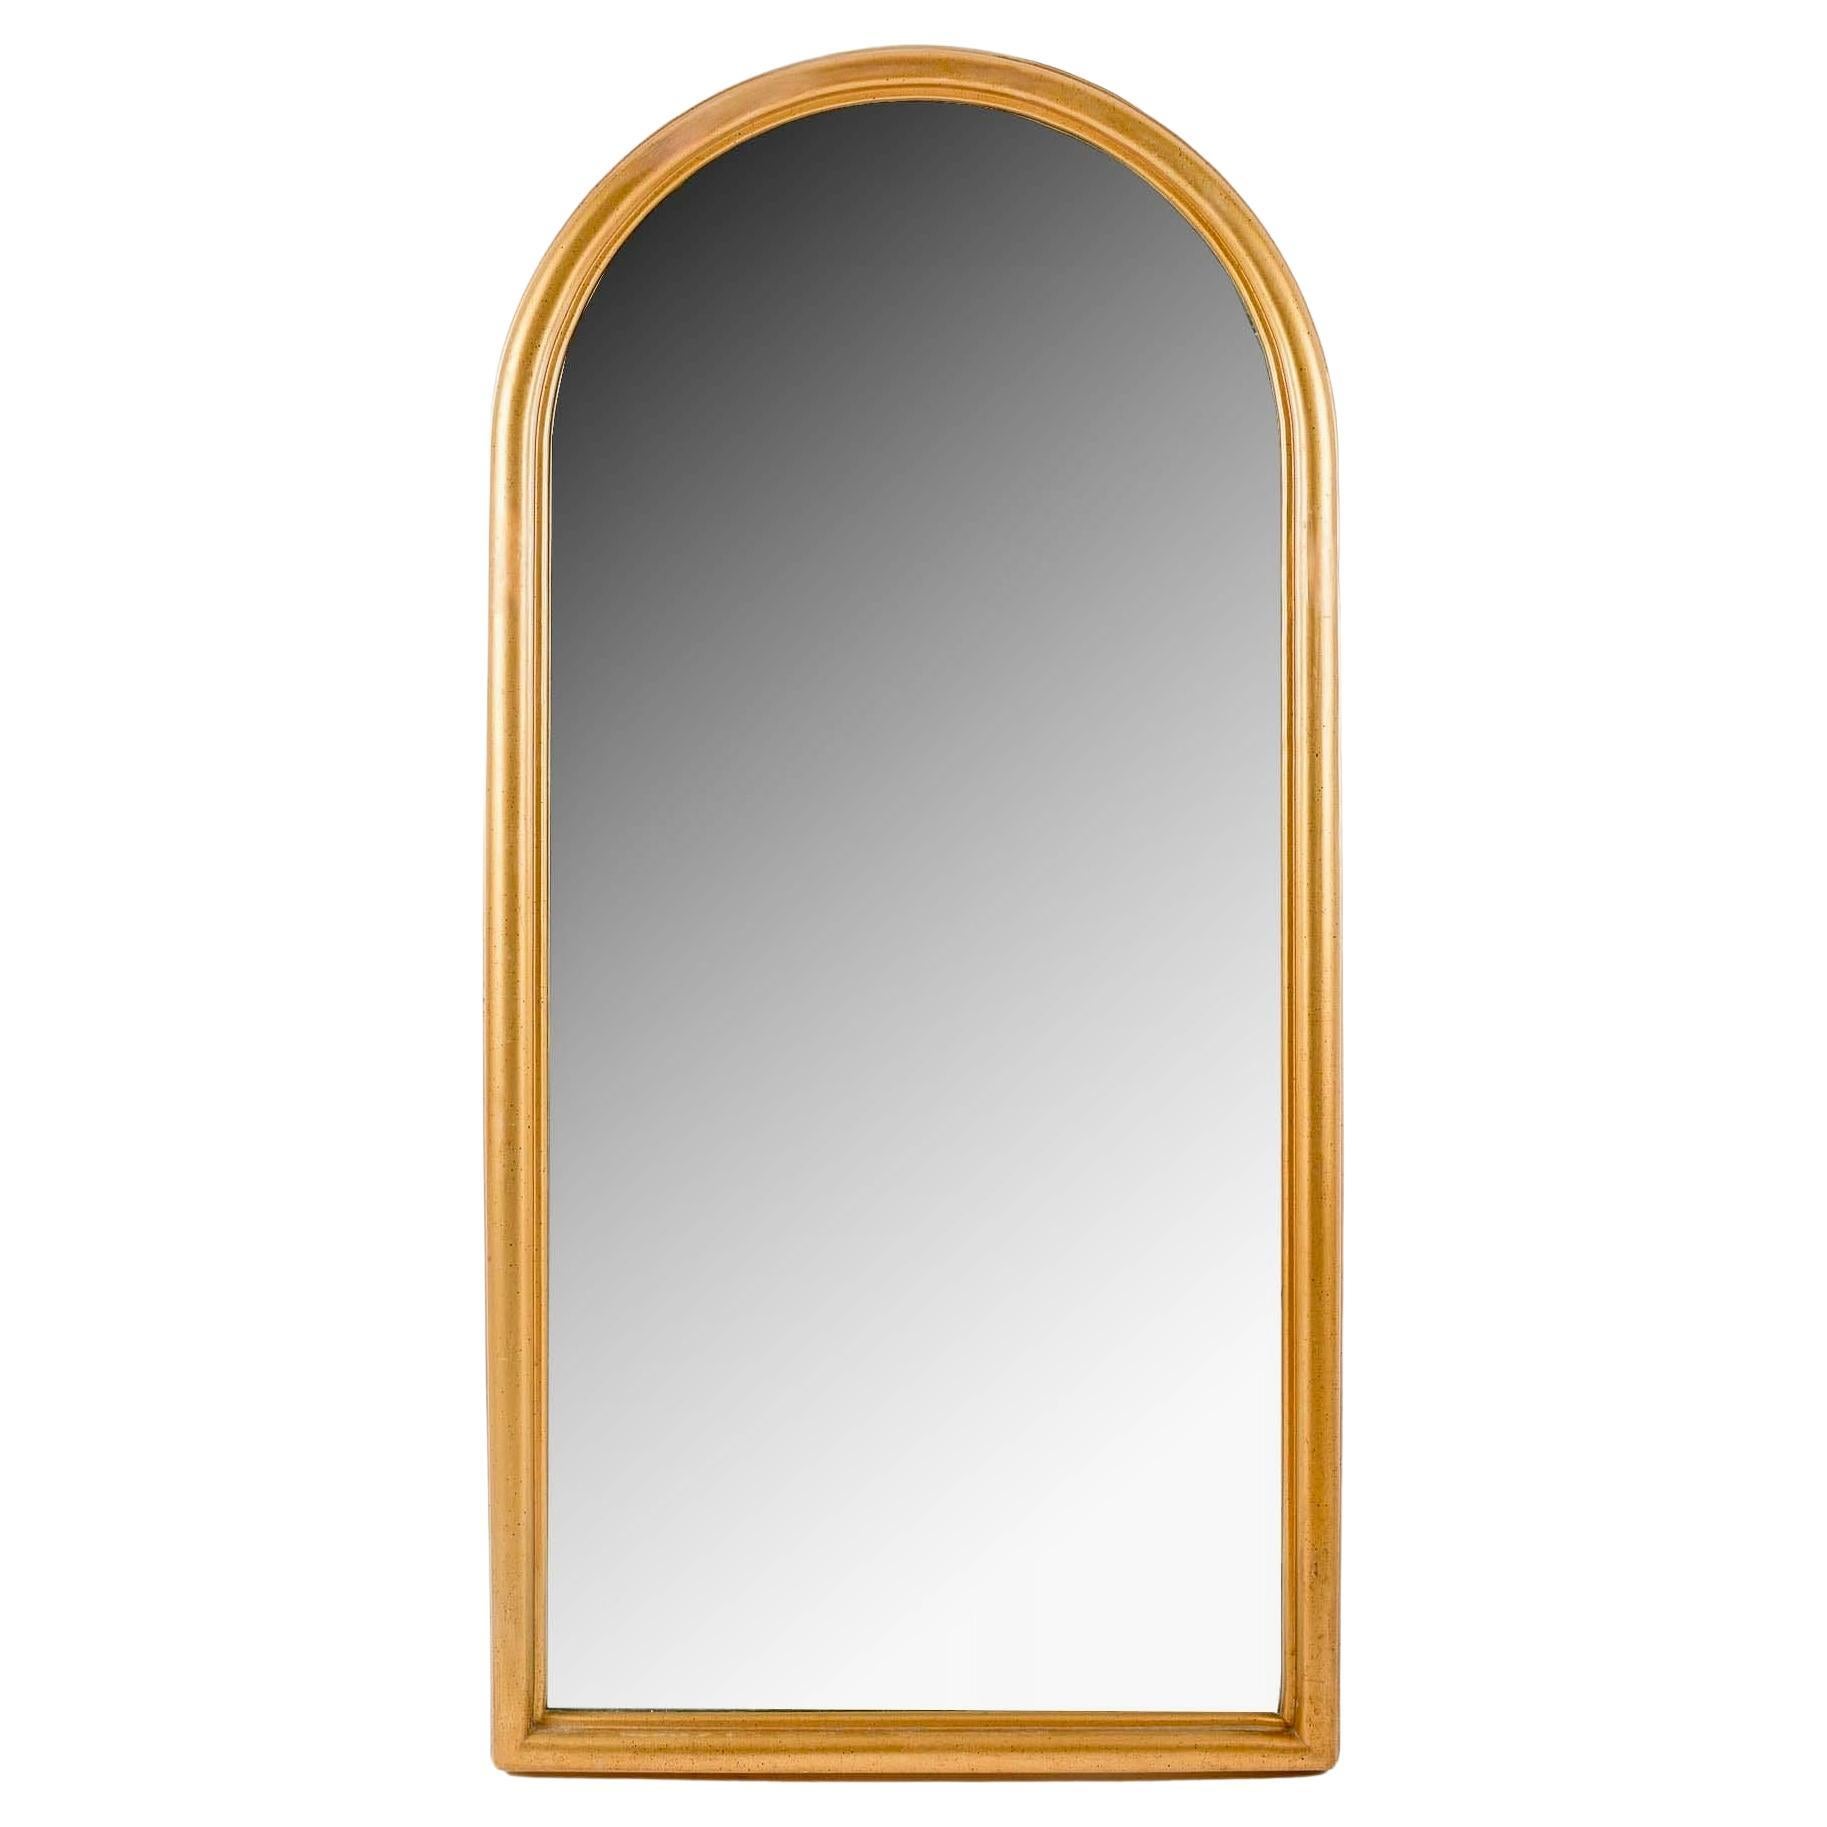 Paire de miroirs intemporels en bois doré

Composé d'un cadre en bois mouluré et doré, orné au sommet d'une 
Ogive d'inspiration romane. 
Au centre, un grand miroir suit la forme du cadre. 